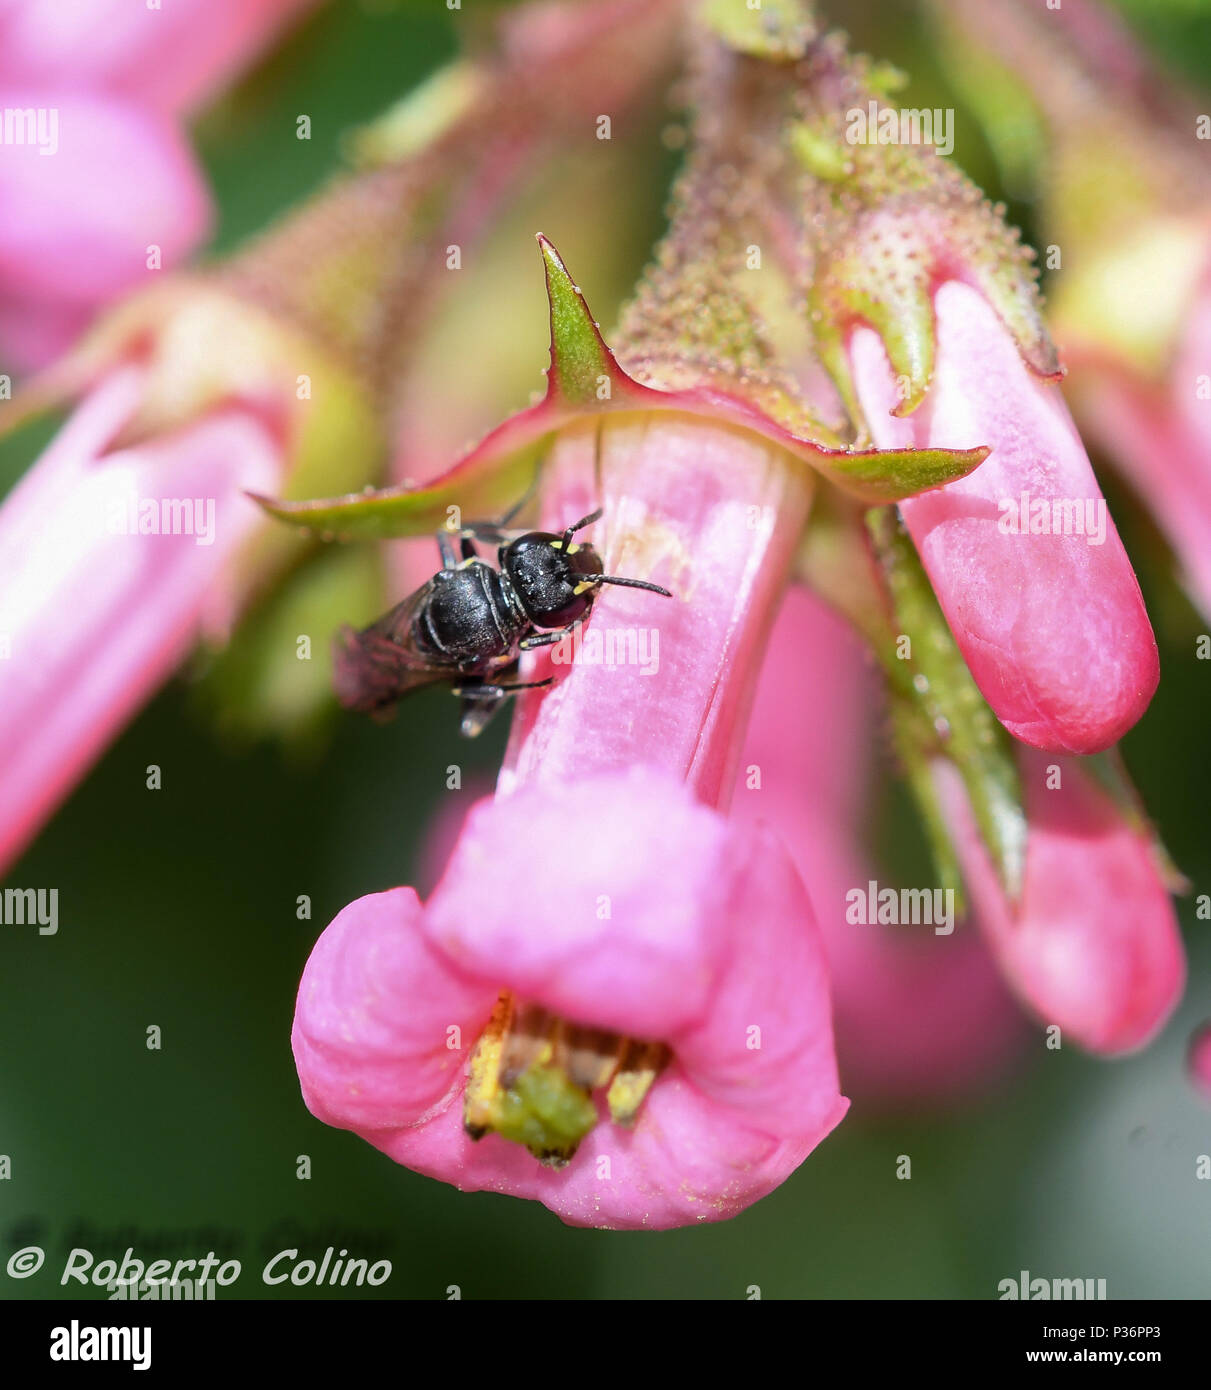 Abeja Pequeñ solitaria di que también se aprovecha del trabajo de los aejorros para poder alimentarse del néctar de las flores de Escalonia. Foto Stock